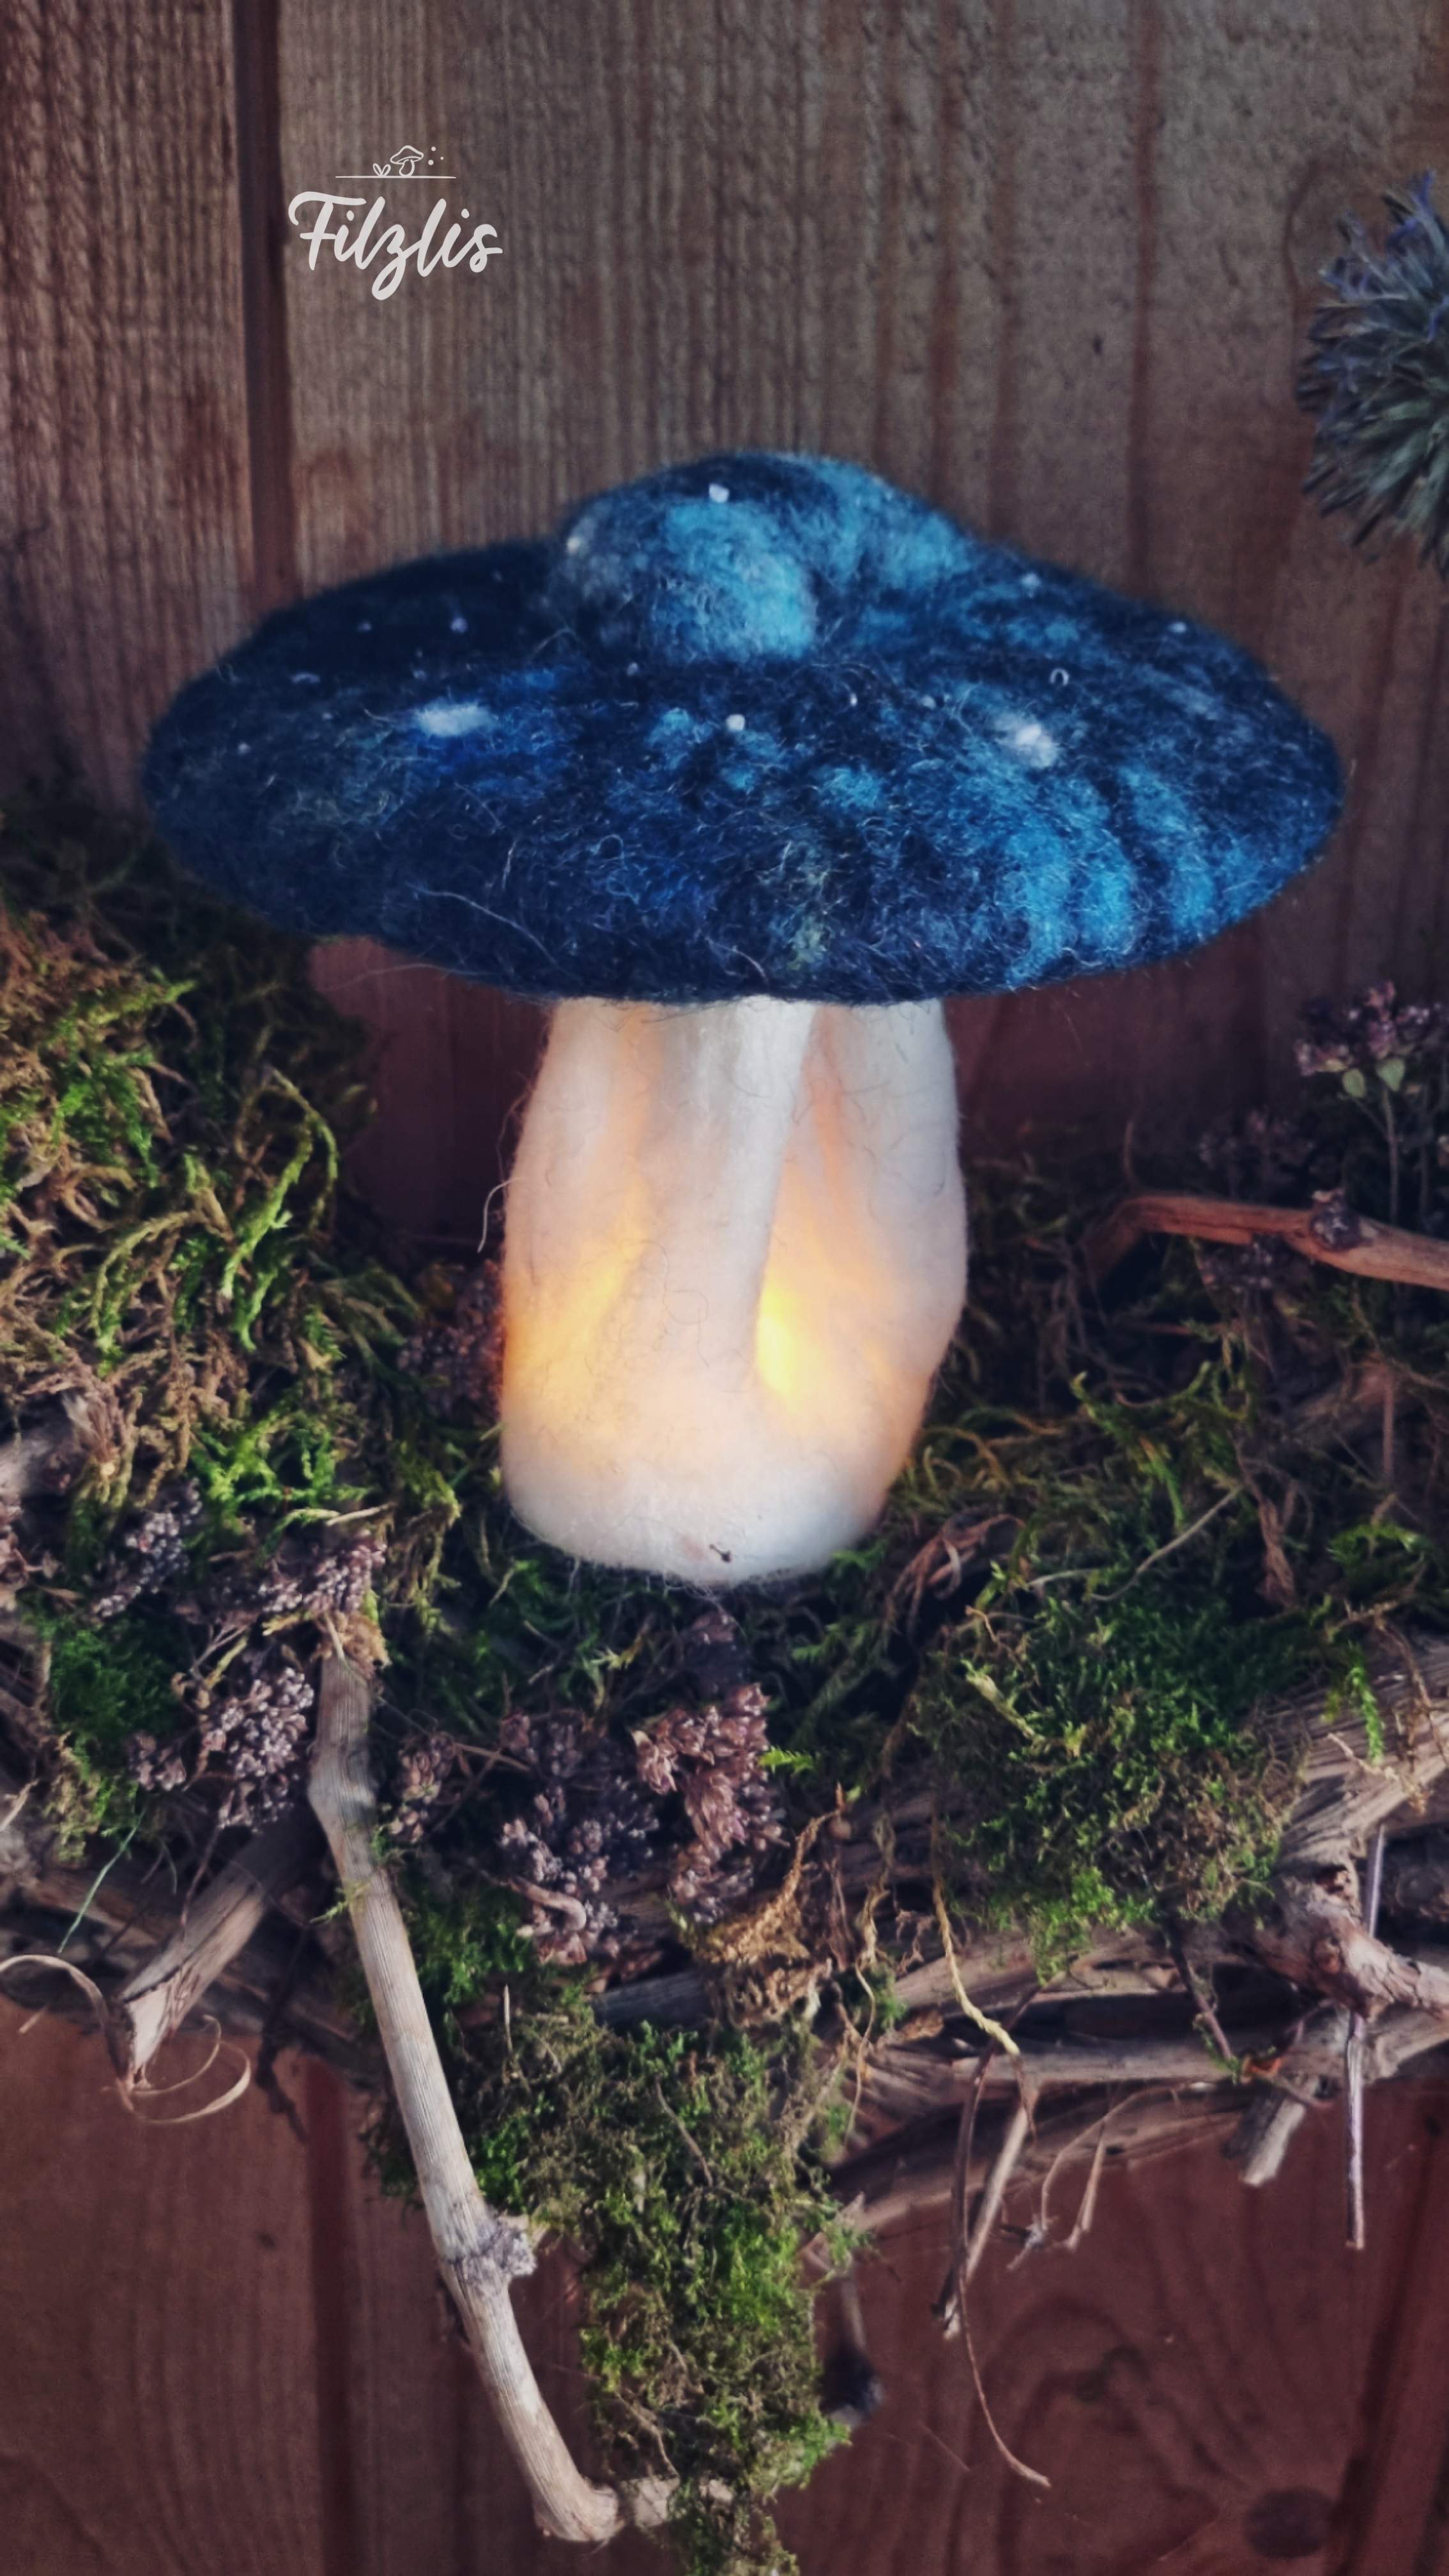 Nachtlicht Mushroom Galaxy blue